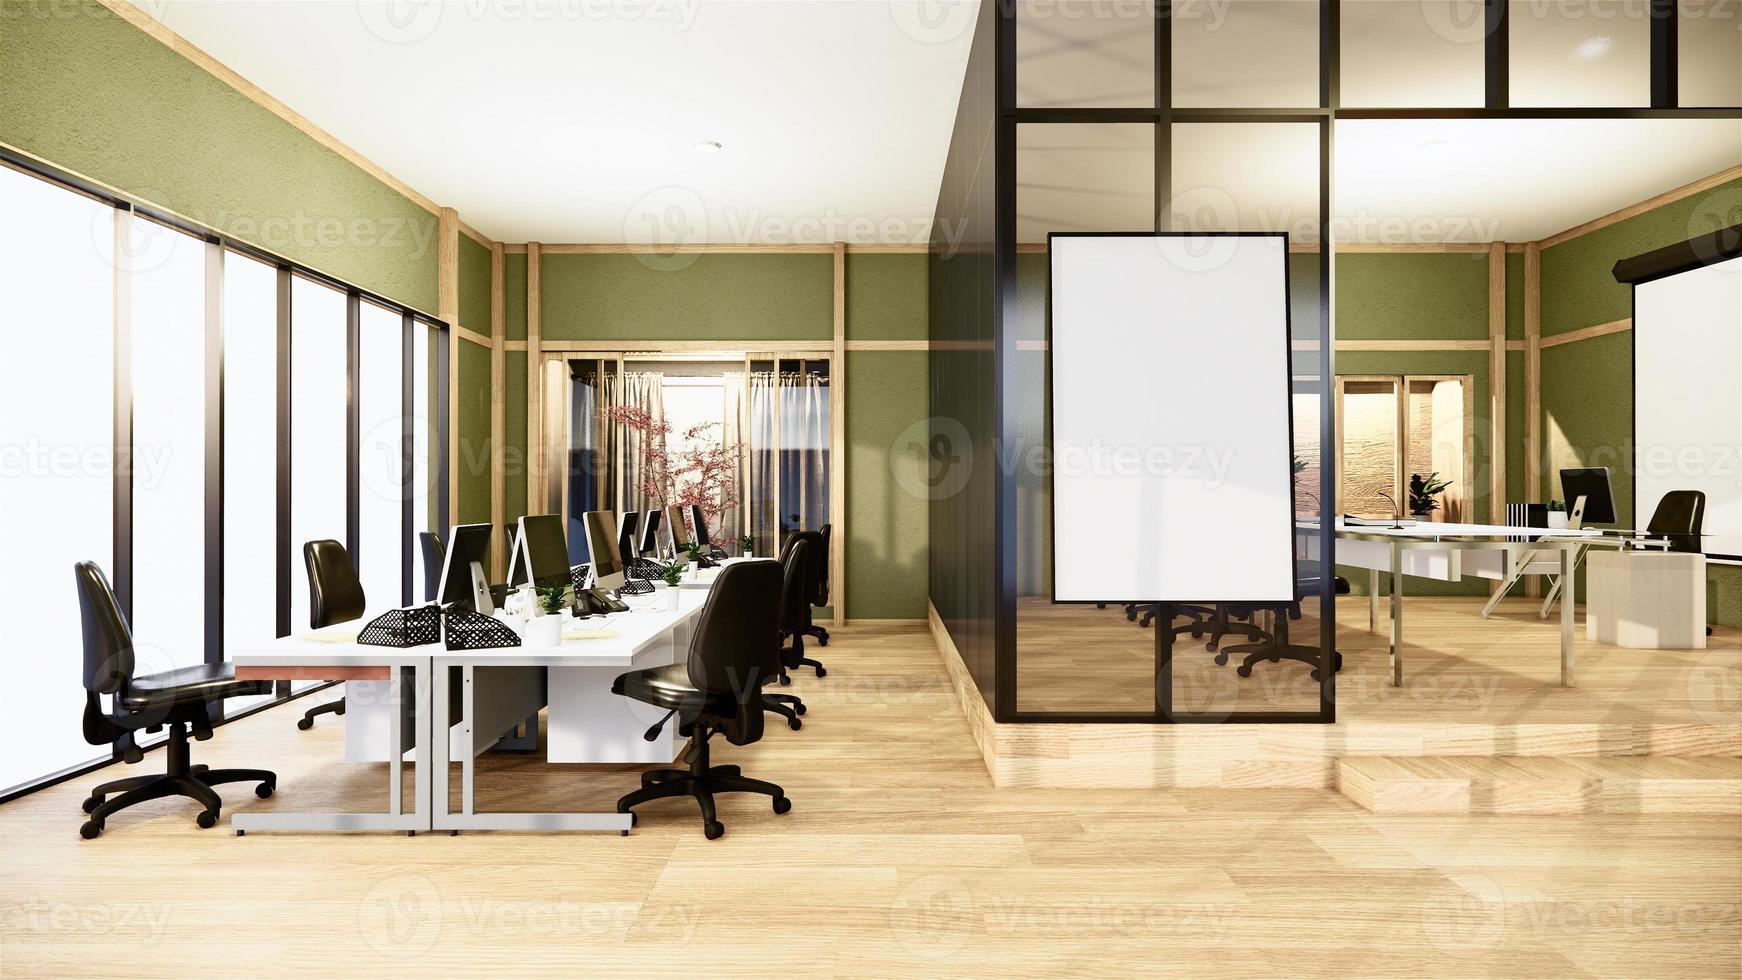 oficina de negocios - hermosa sala de reuniones y mesa de conferencias de Japanroom, estilo moderno. Representación 3d foto